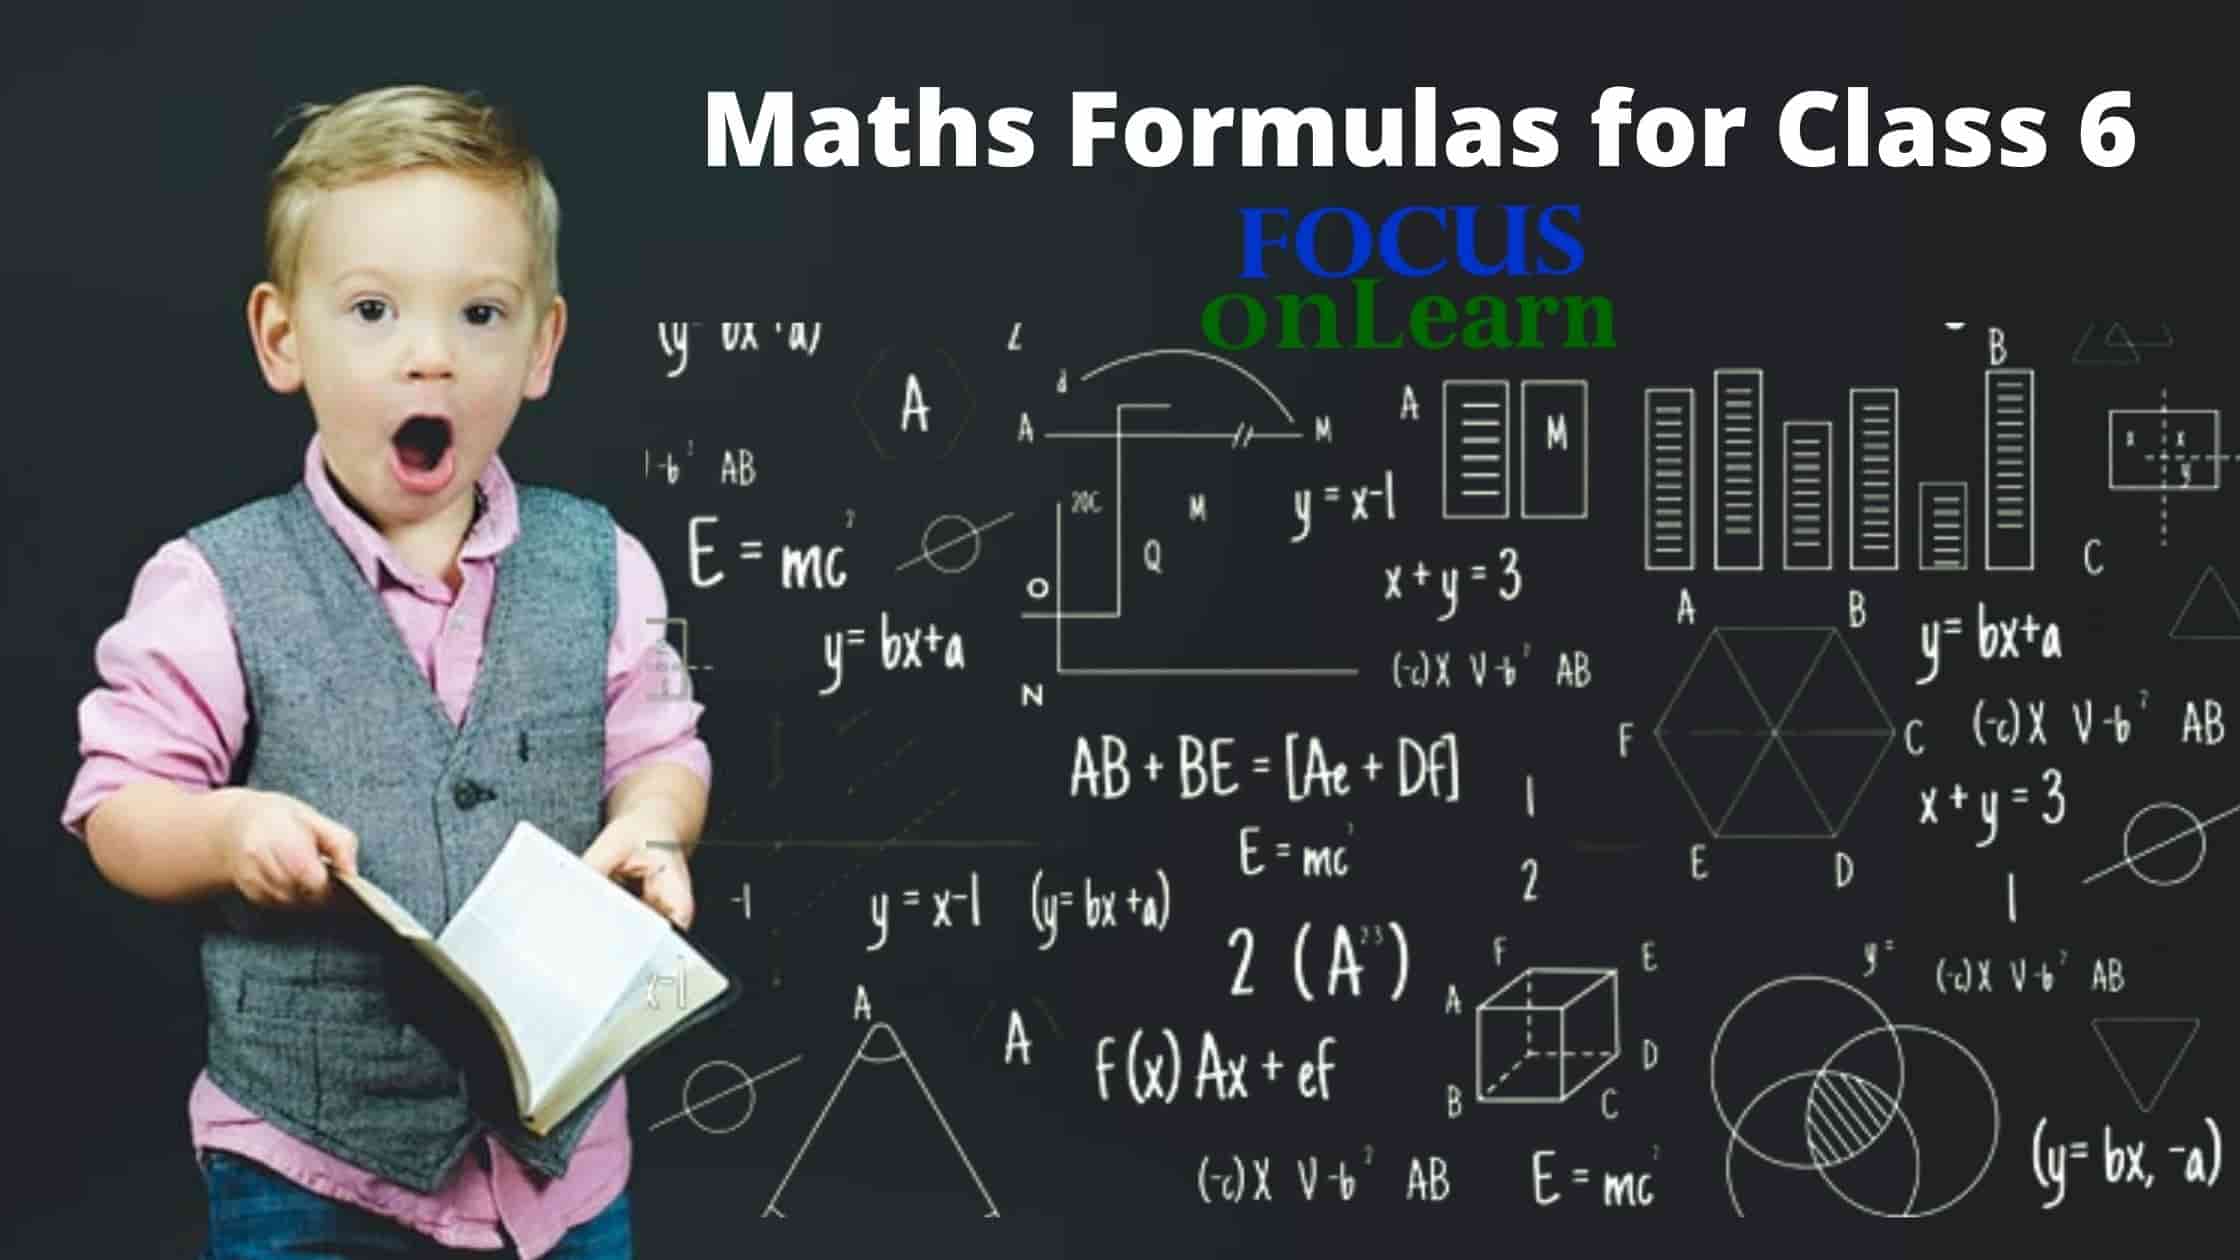 Maths Formulas for Class 6